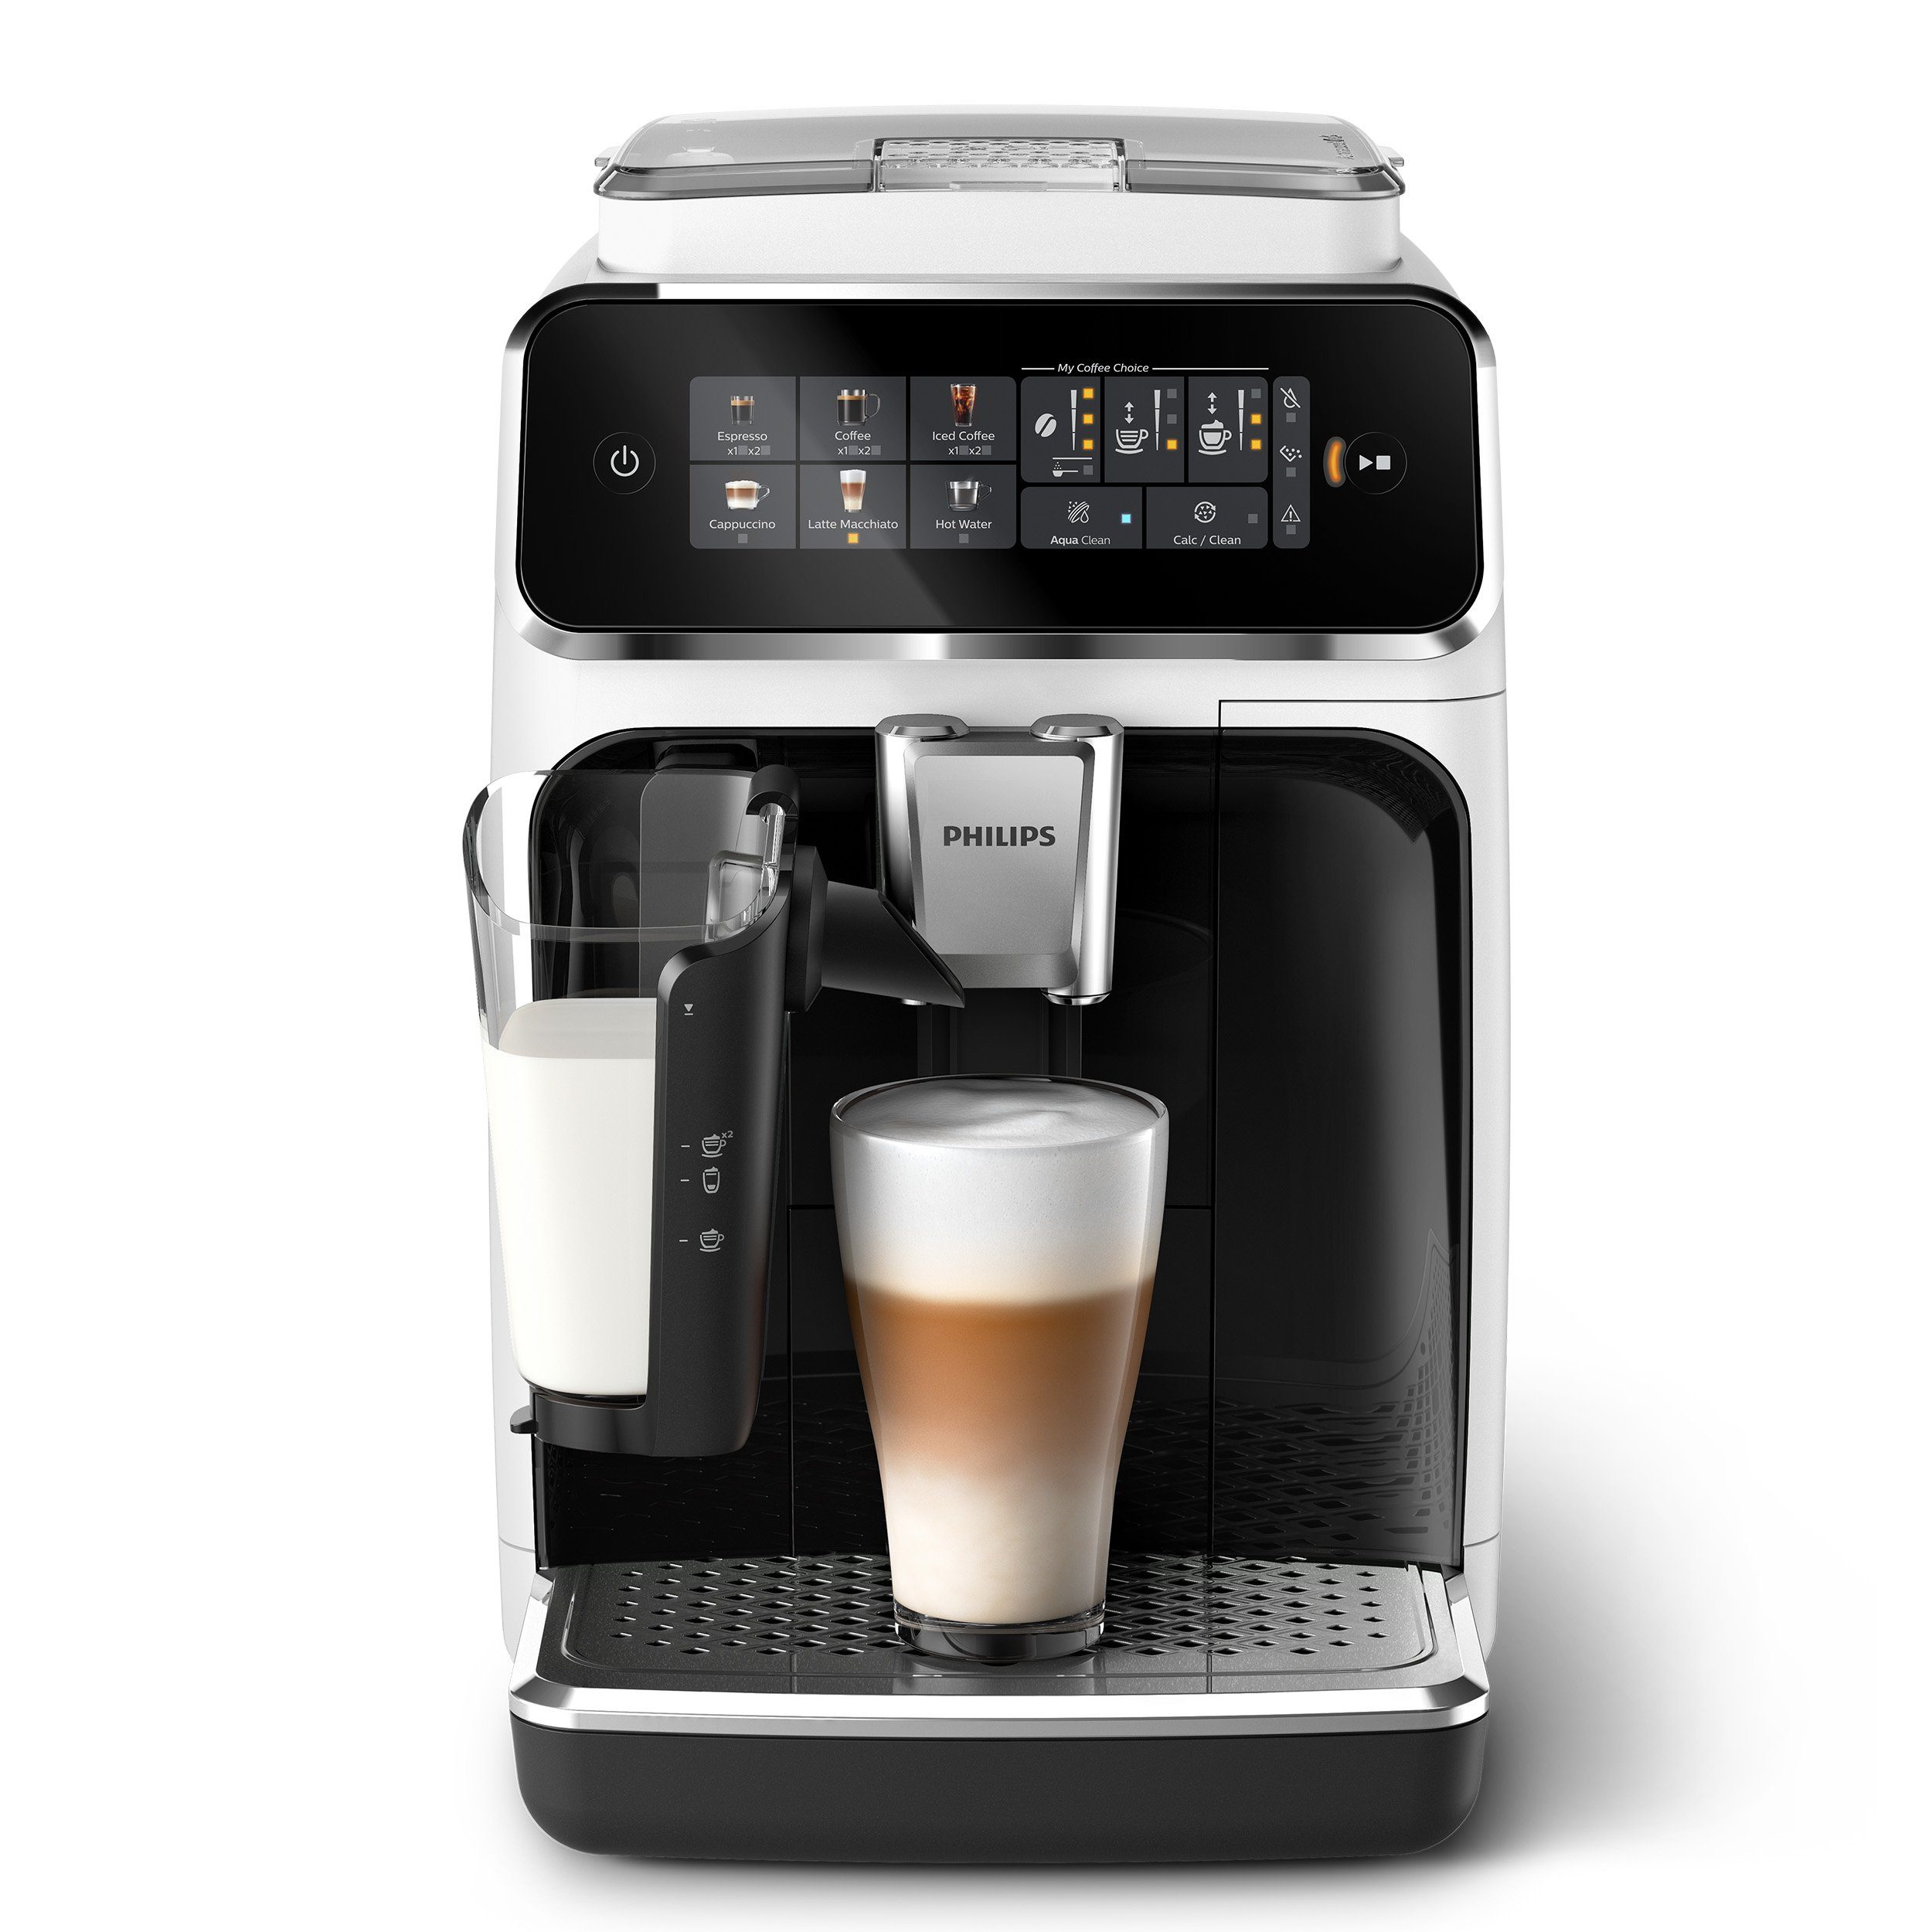 6 LatteGo-Milchsystem, Weiß/Schwarz Kaffeespezialitäten, Philips 3300 EP3343/50 Kaffeevollautomat mit Series,